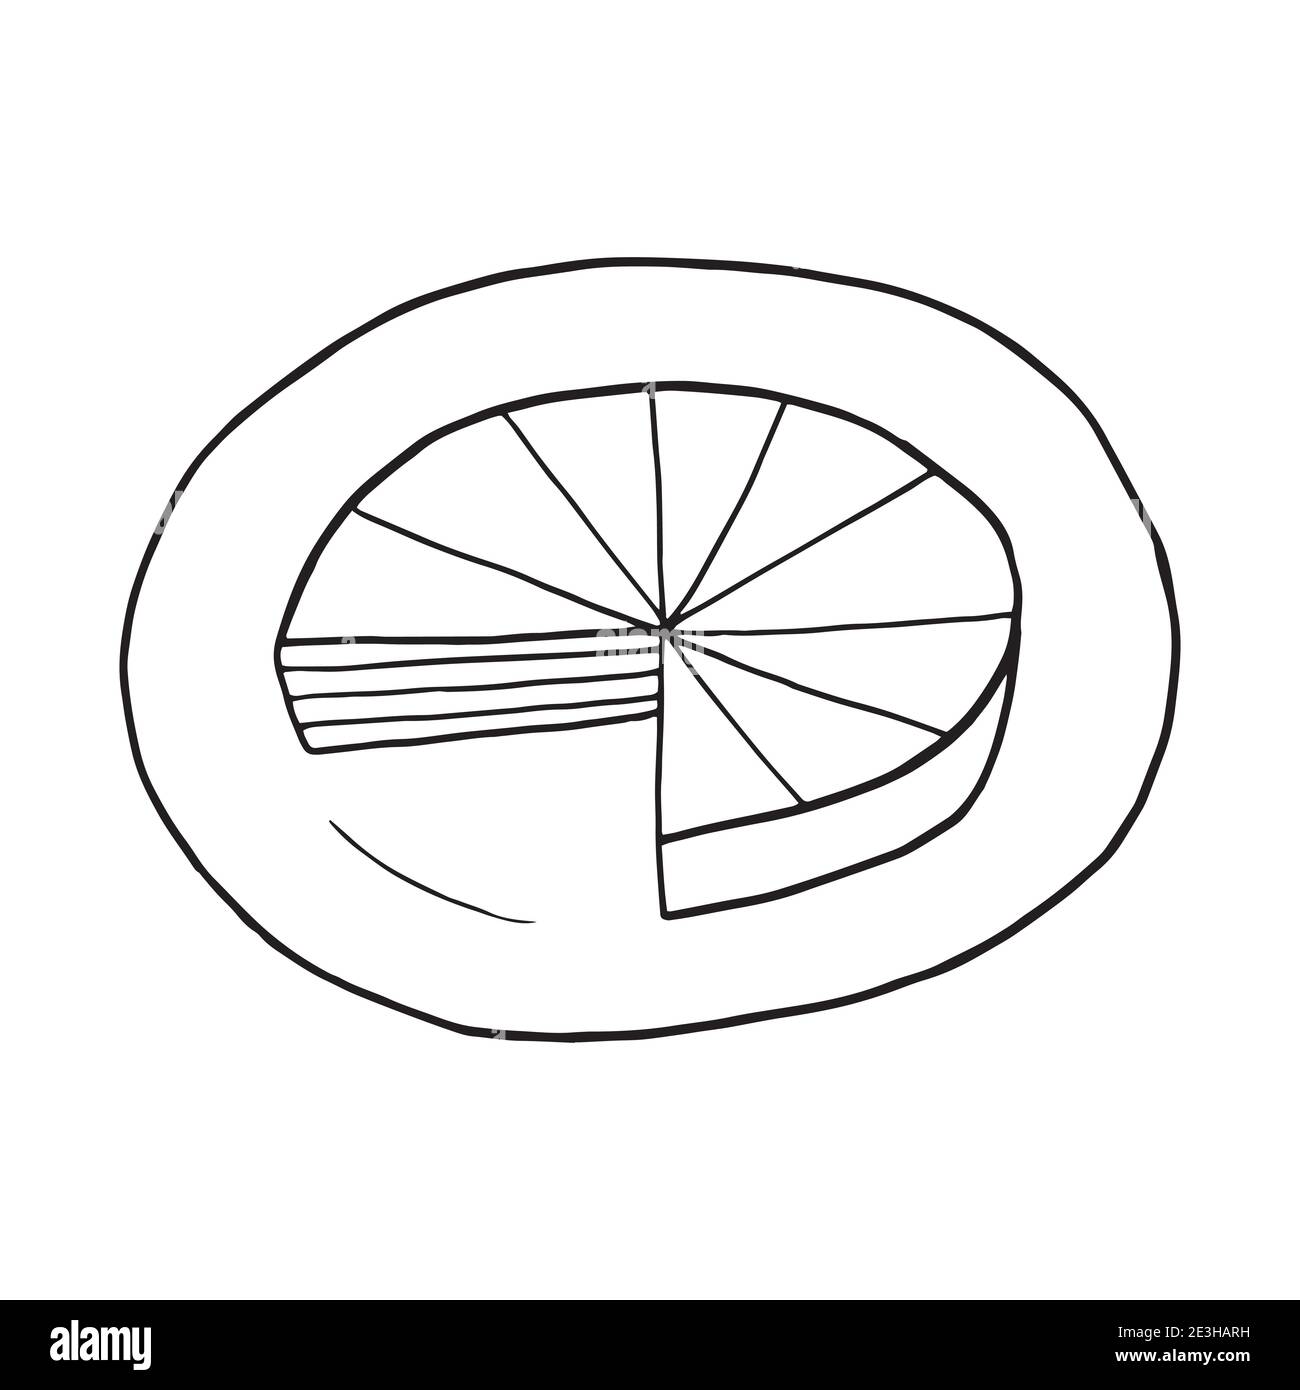 Vektor Hand gezeichnete Doodle prinzregentorte. Bayrische Torte. Deutscher Nachtisch. Design Skizzenelement für Menü Café, Restaurant, Etikett und Verpackung. Stock Vektor